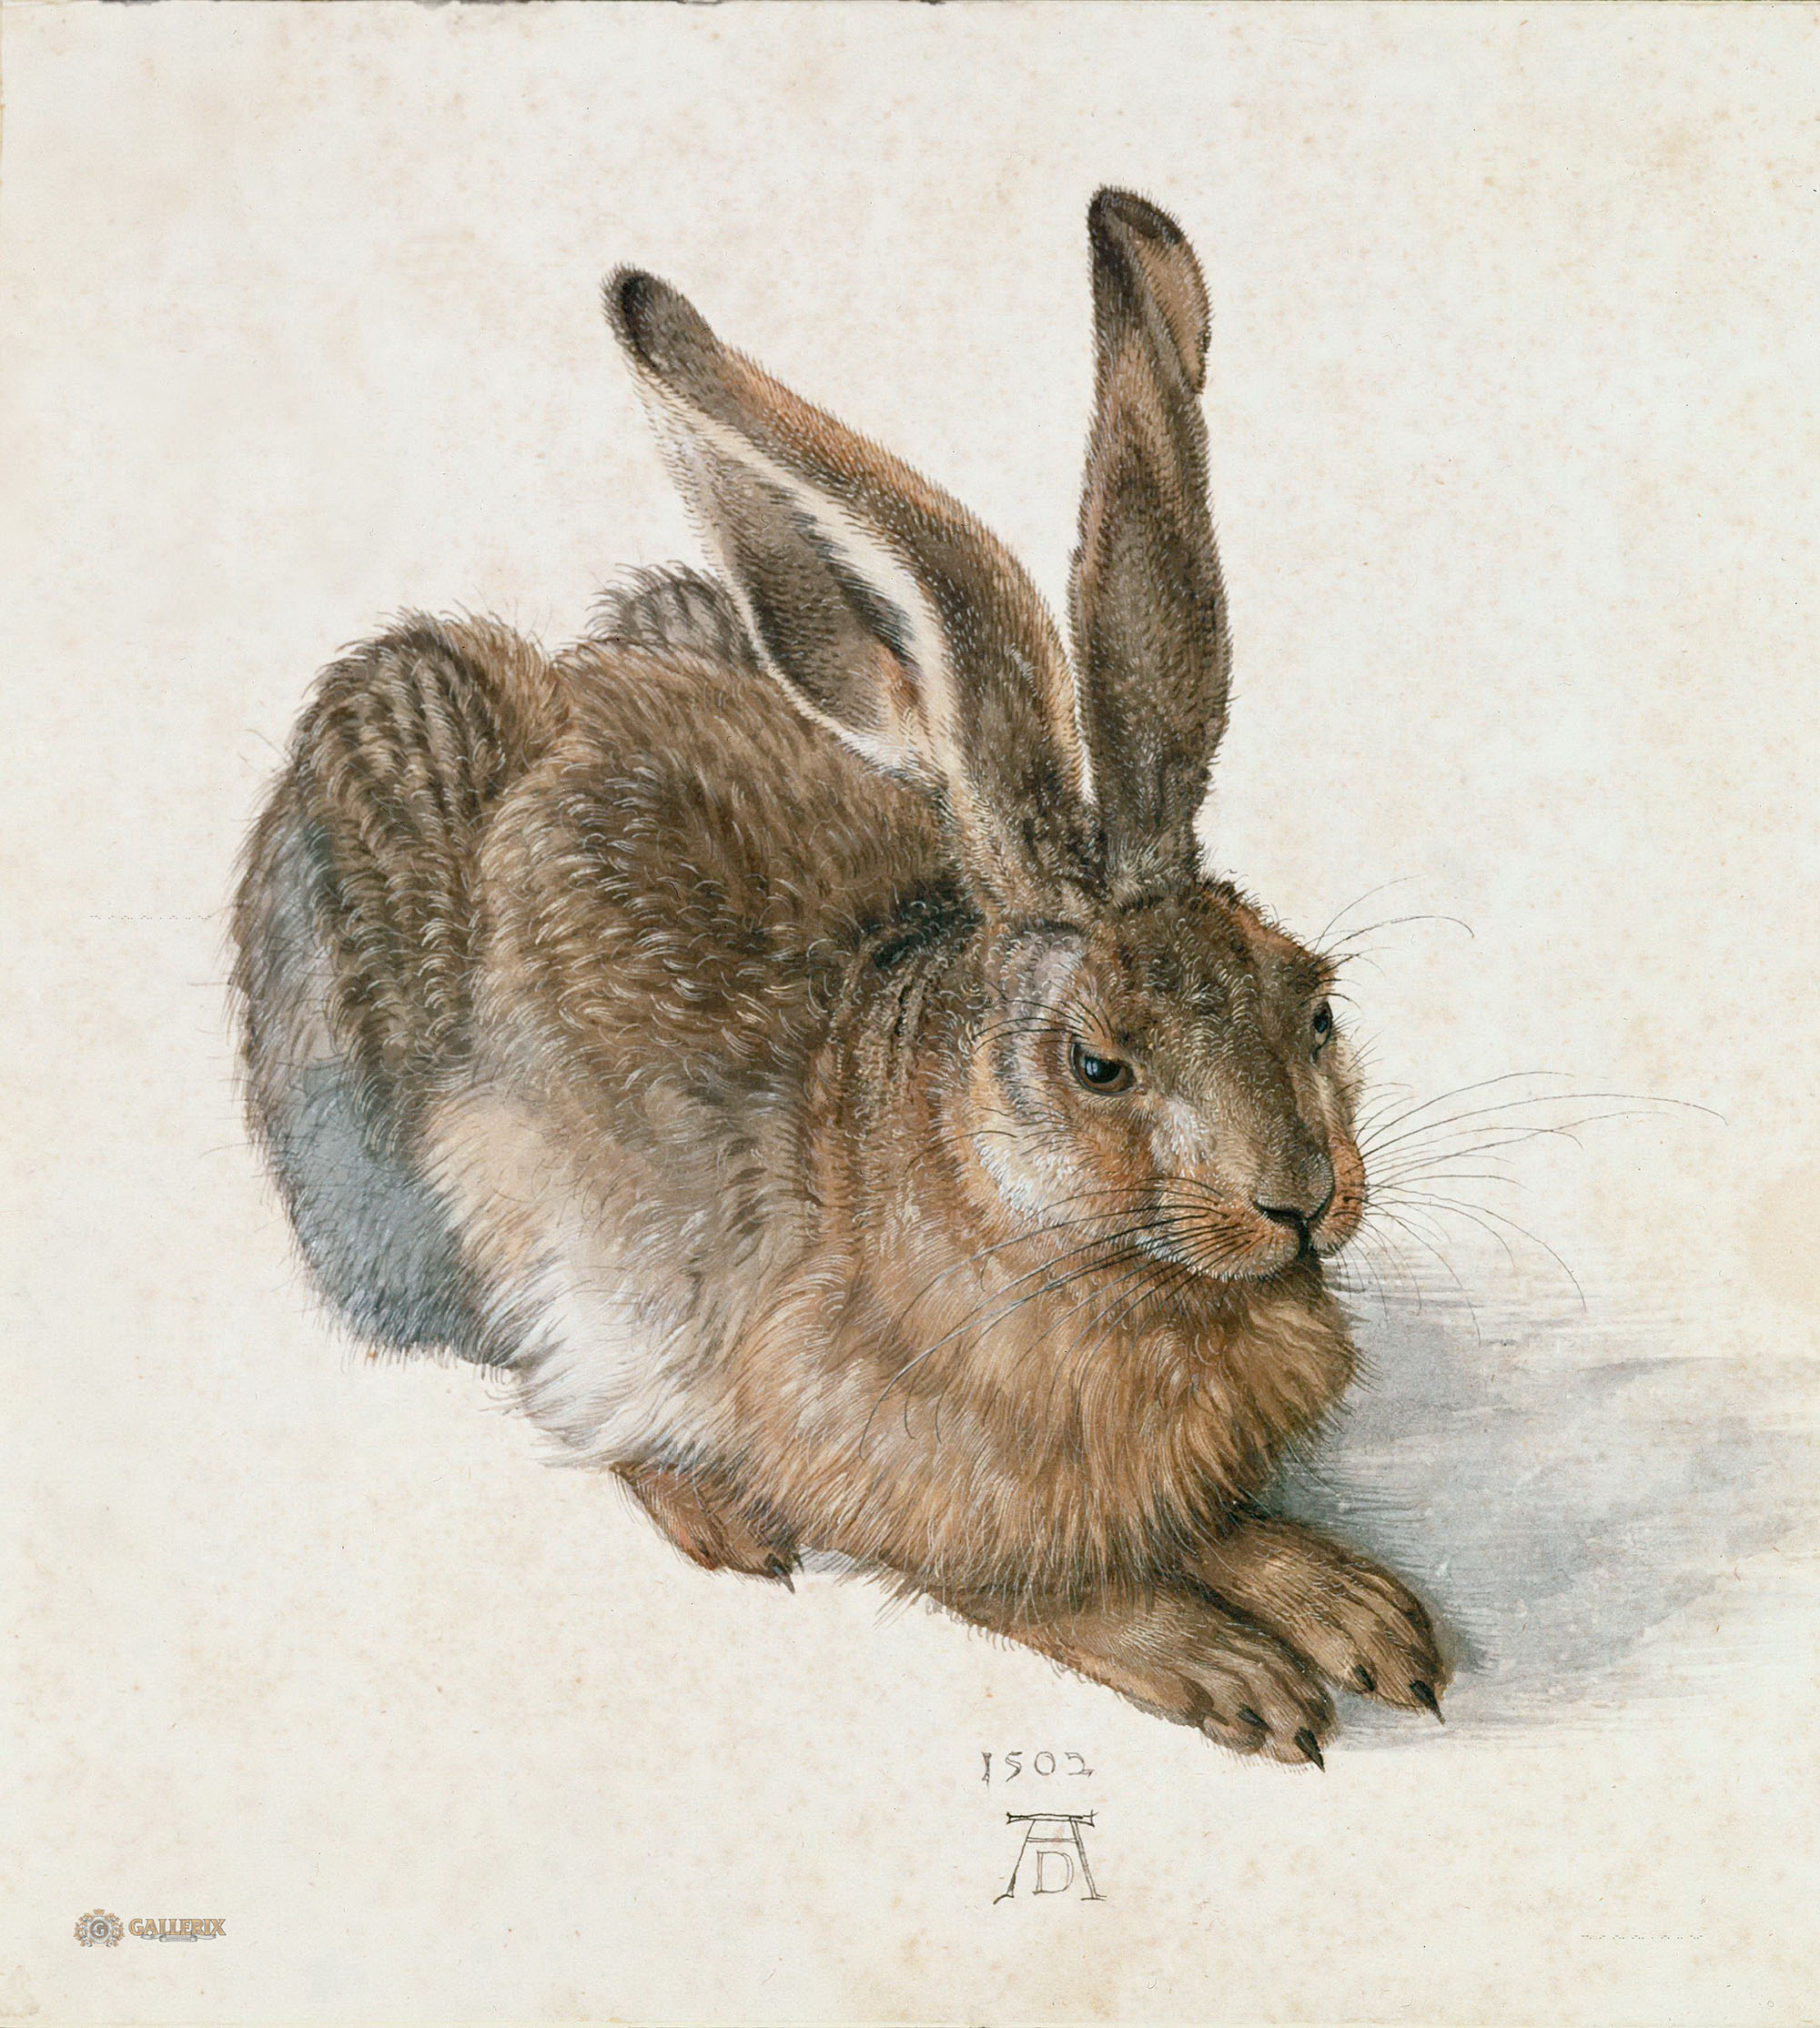 Альбрехт Дюрер. "Молодой заяц". 1502. Музей графического искусства Альбертина, Вена.